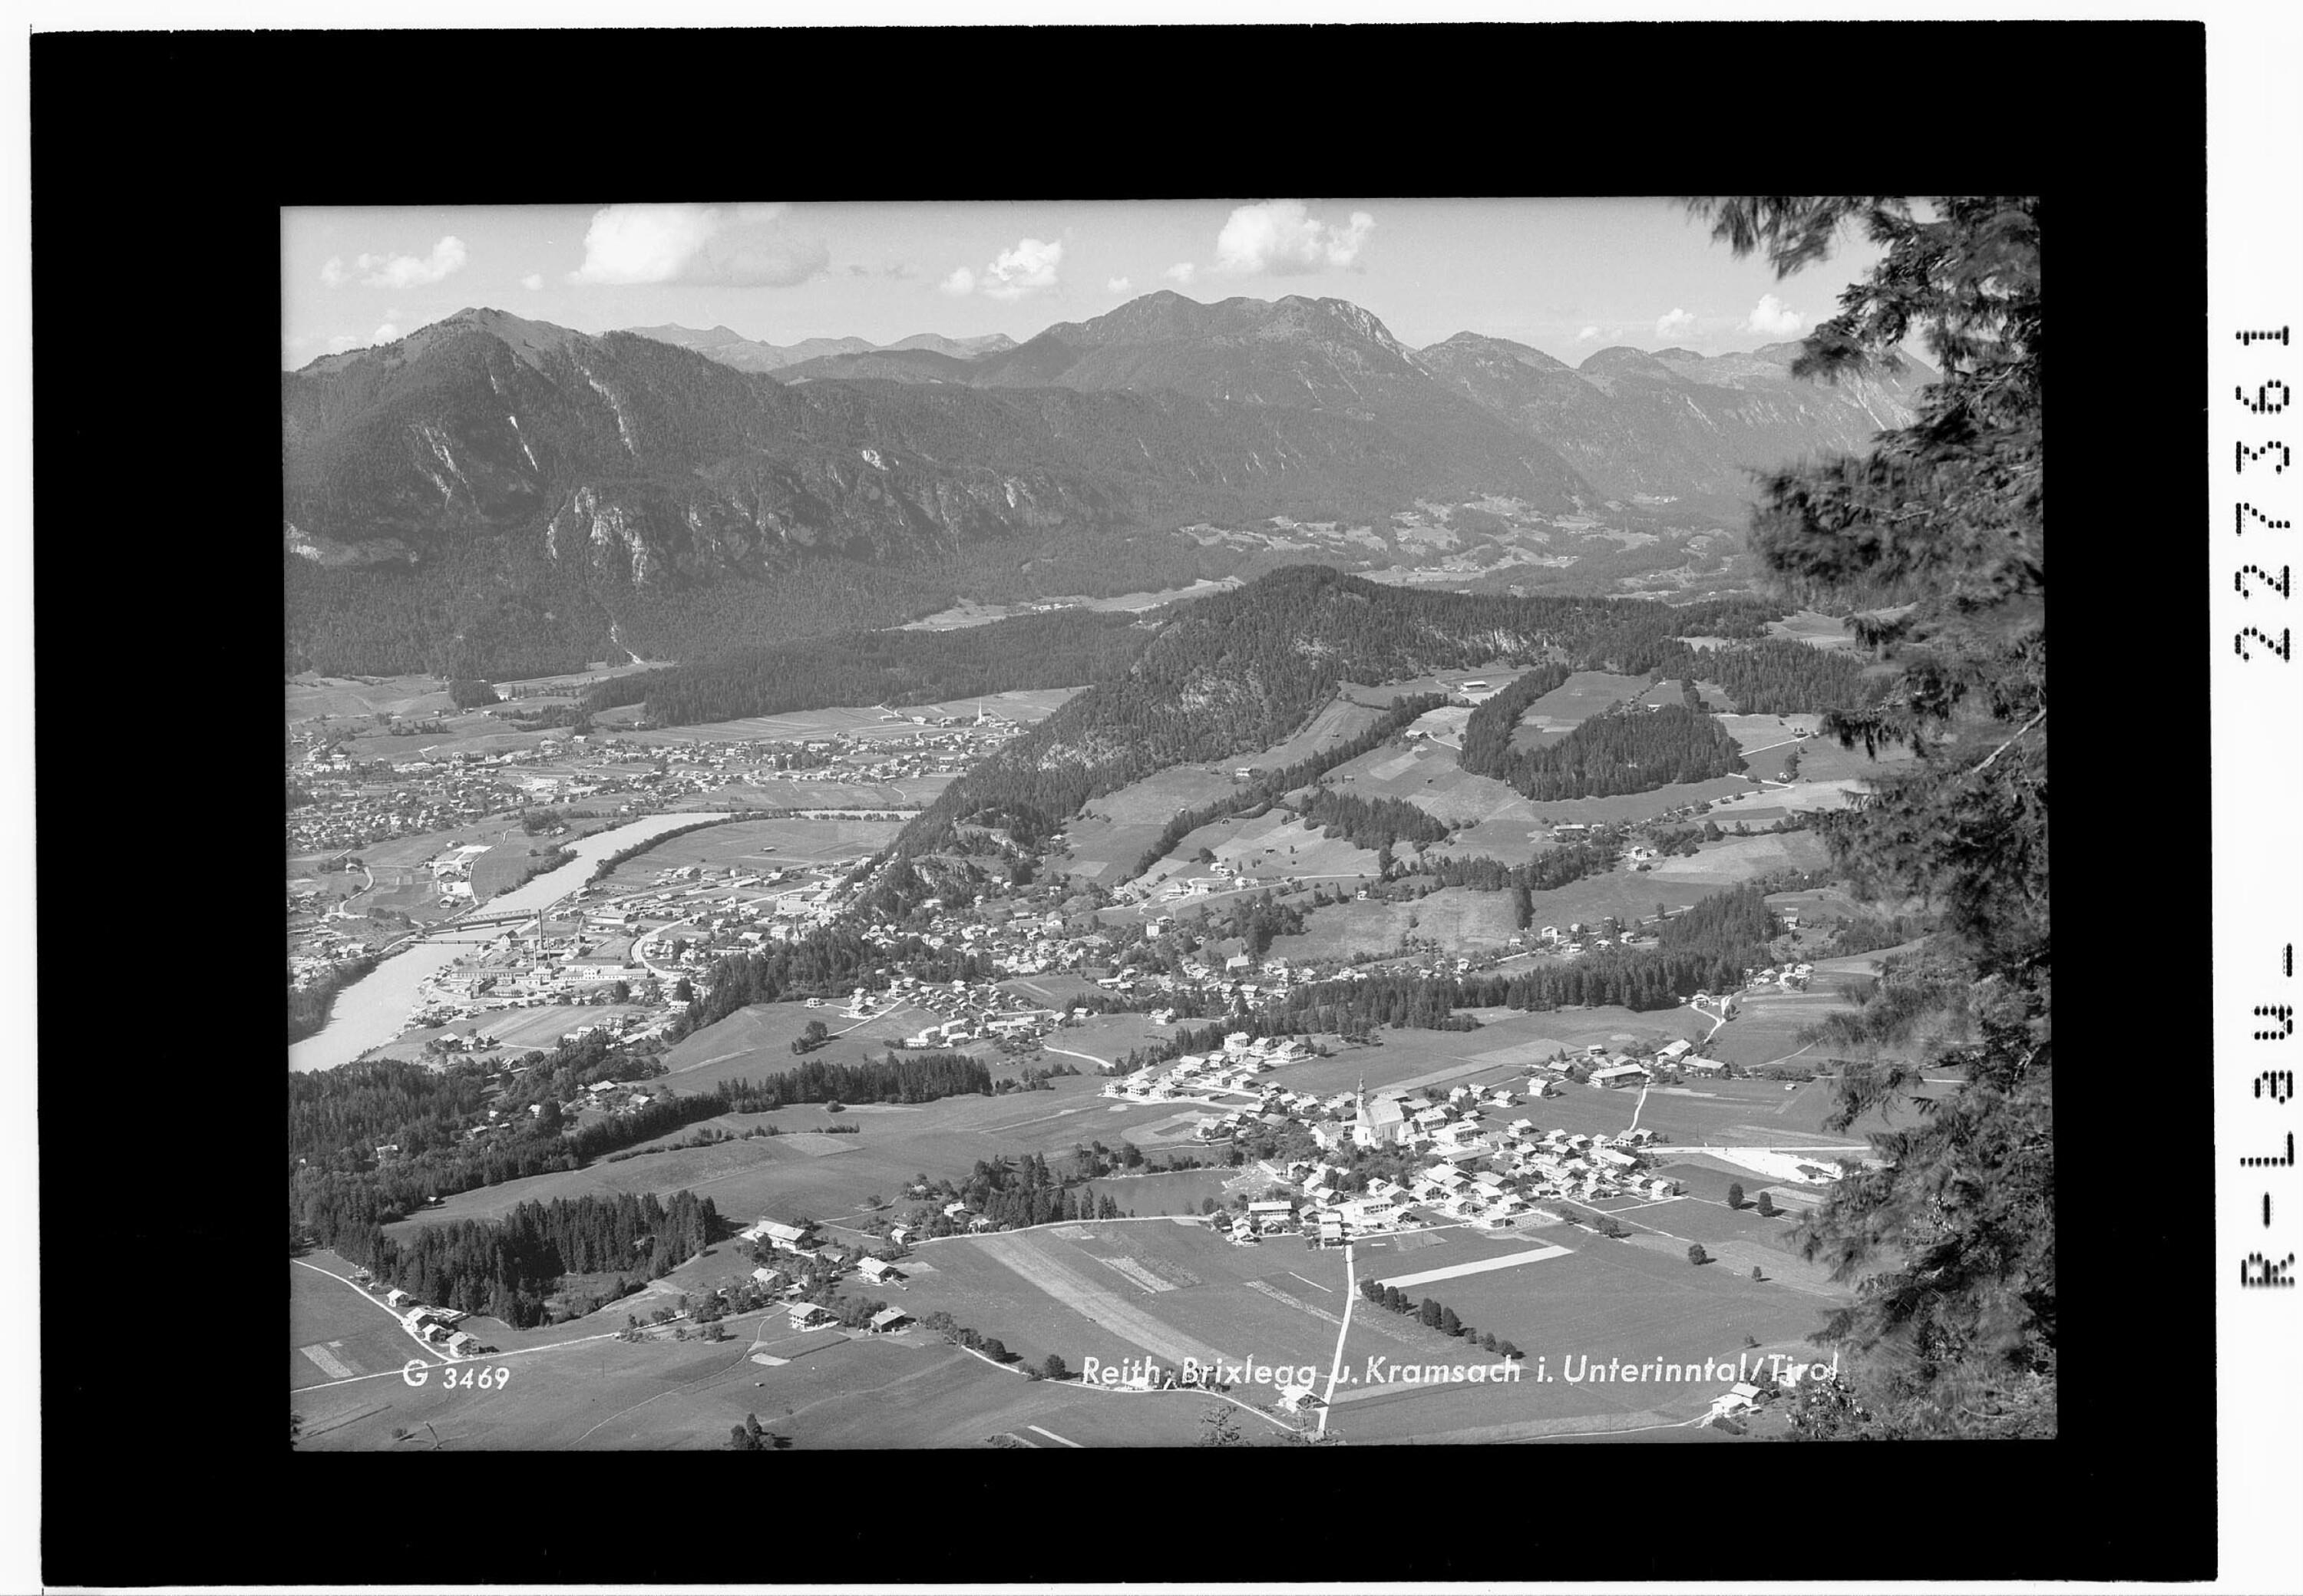 Reith / Brixlegg und Kramsach im Unterinntal / Tirol></div>


    <hr>
    <div class=